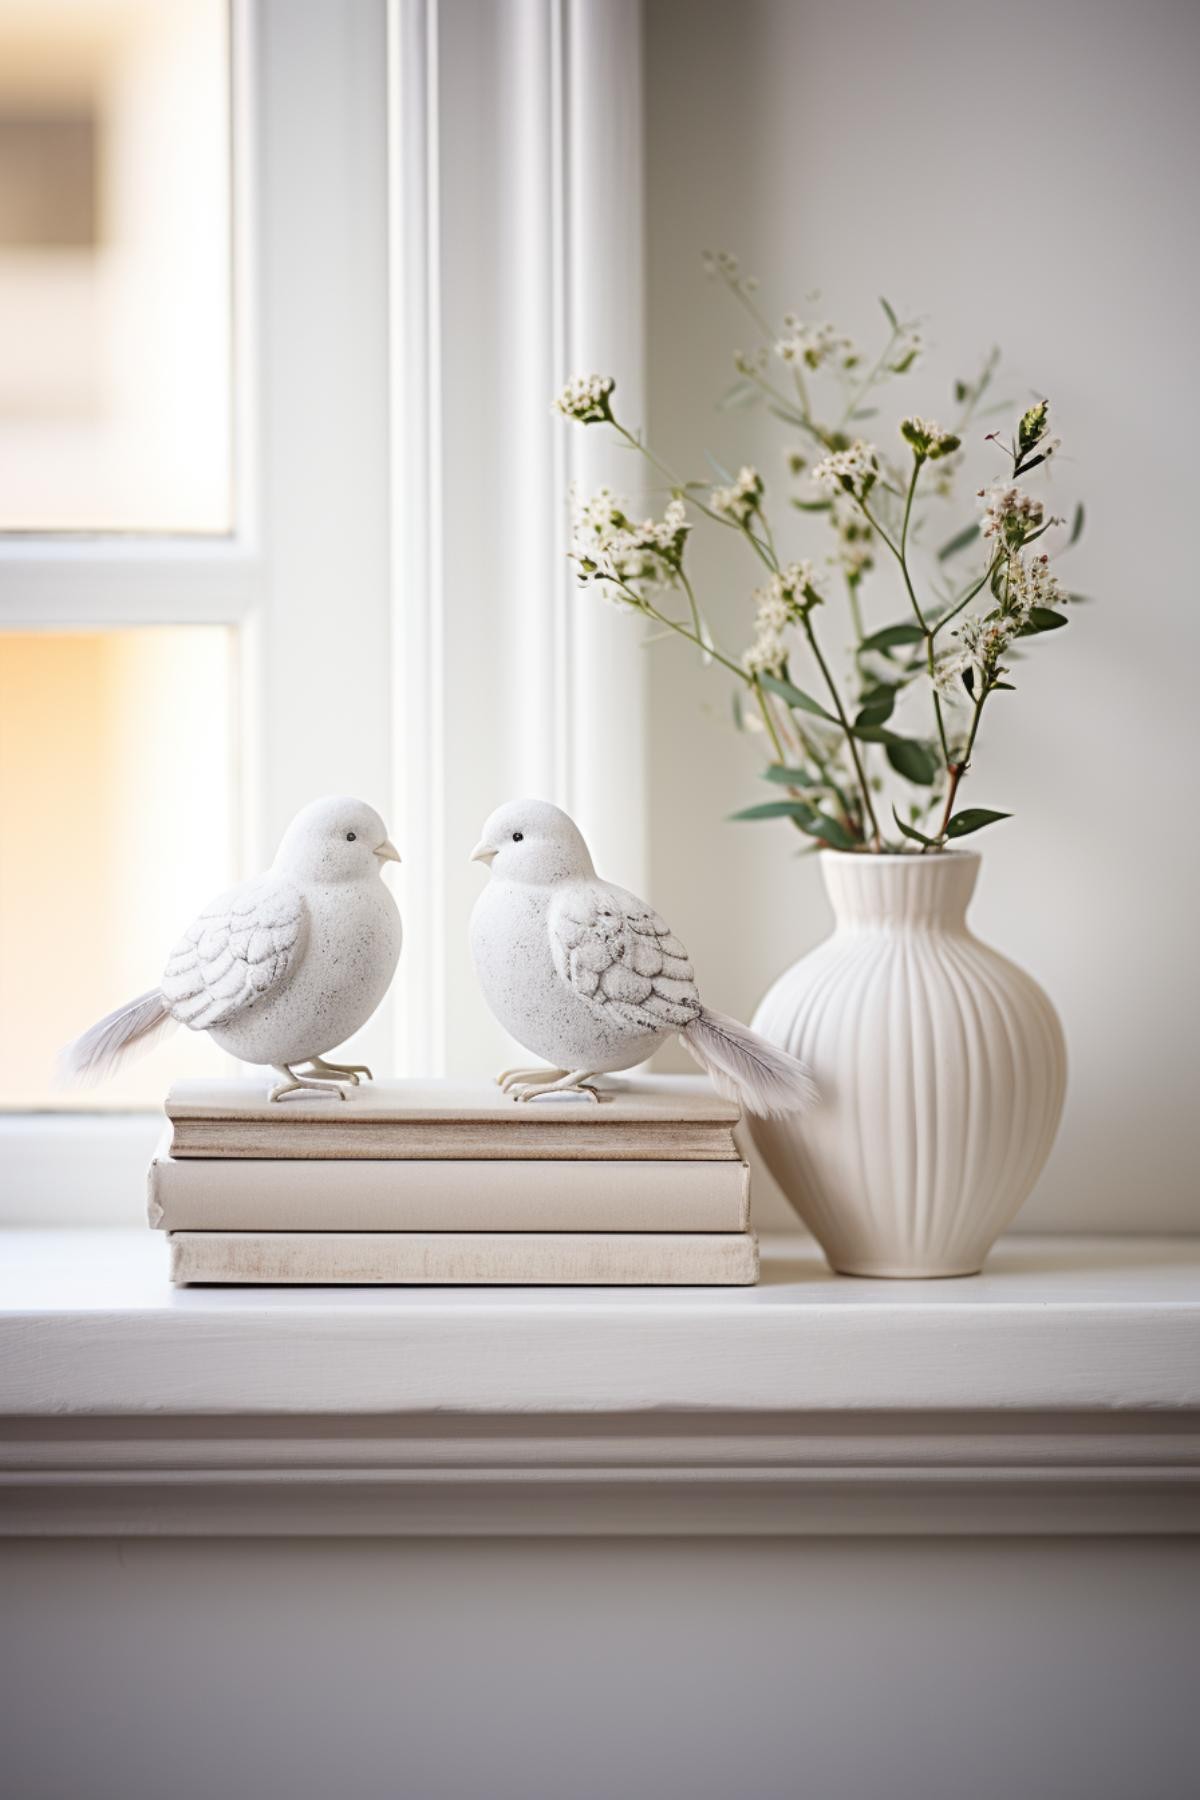 Lovebird Figurines